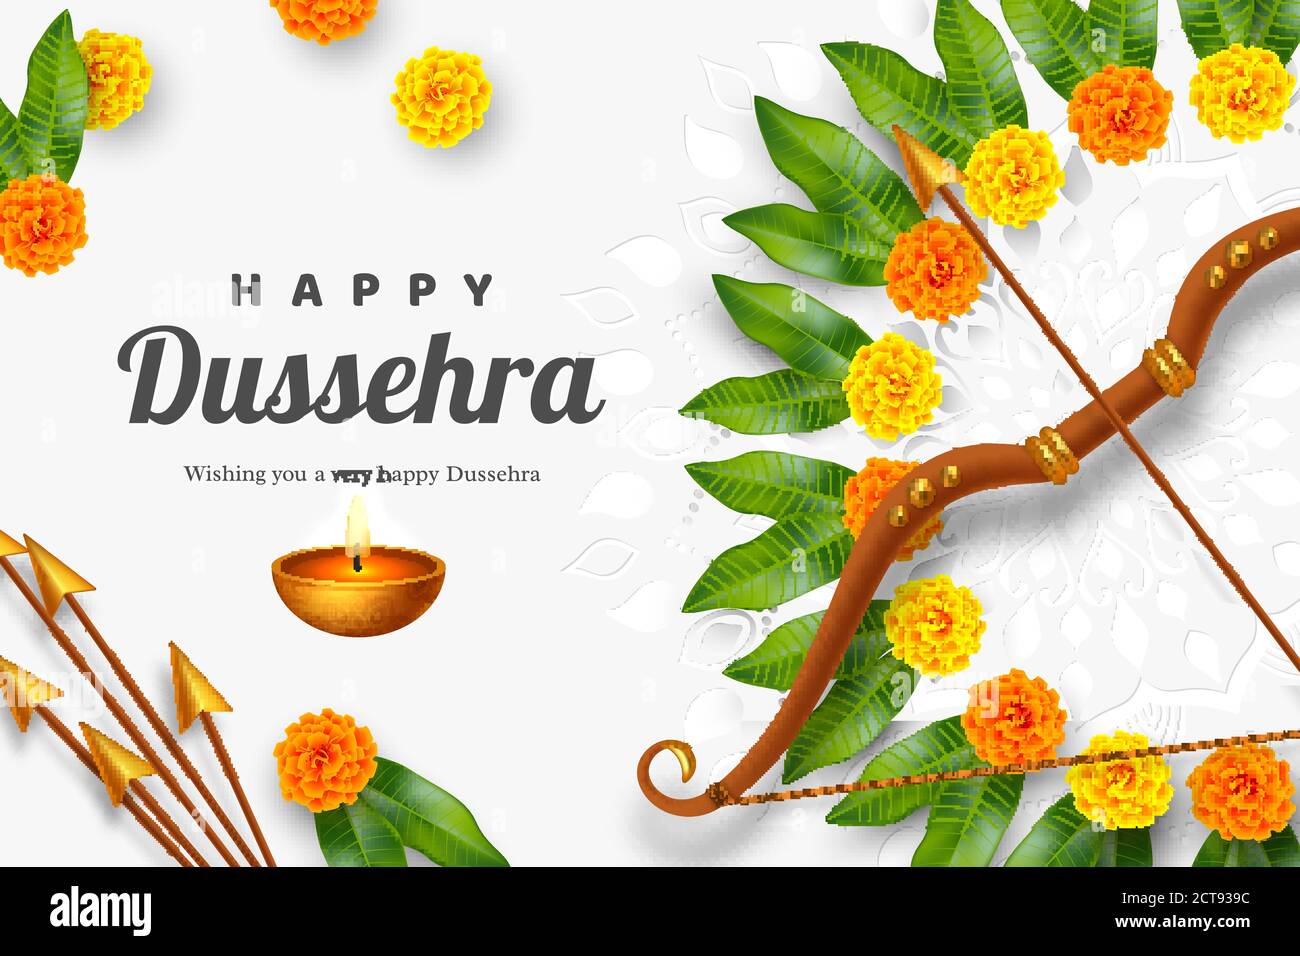 Happy Dussehra banner Stock Vector Image & Art - Alamy